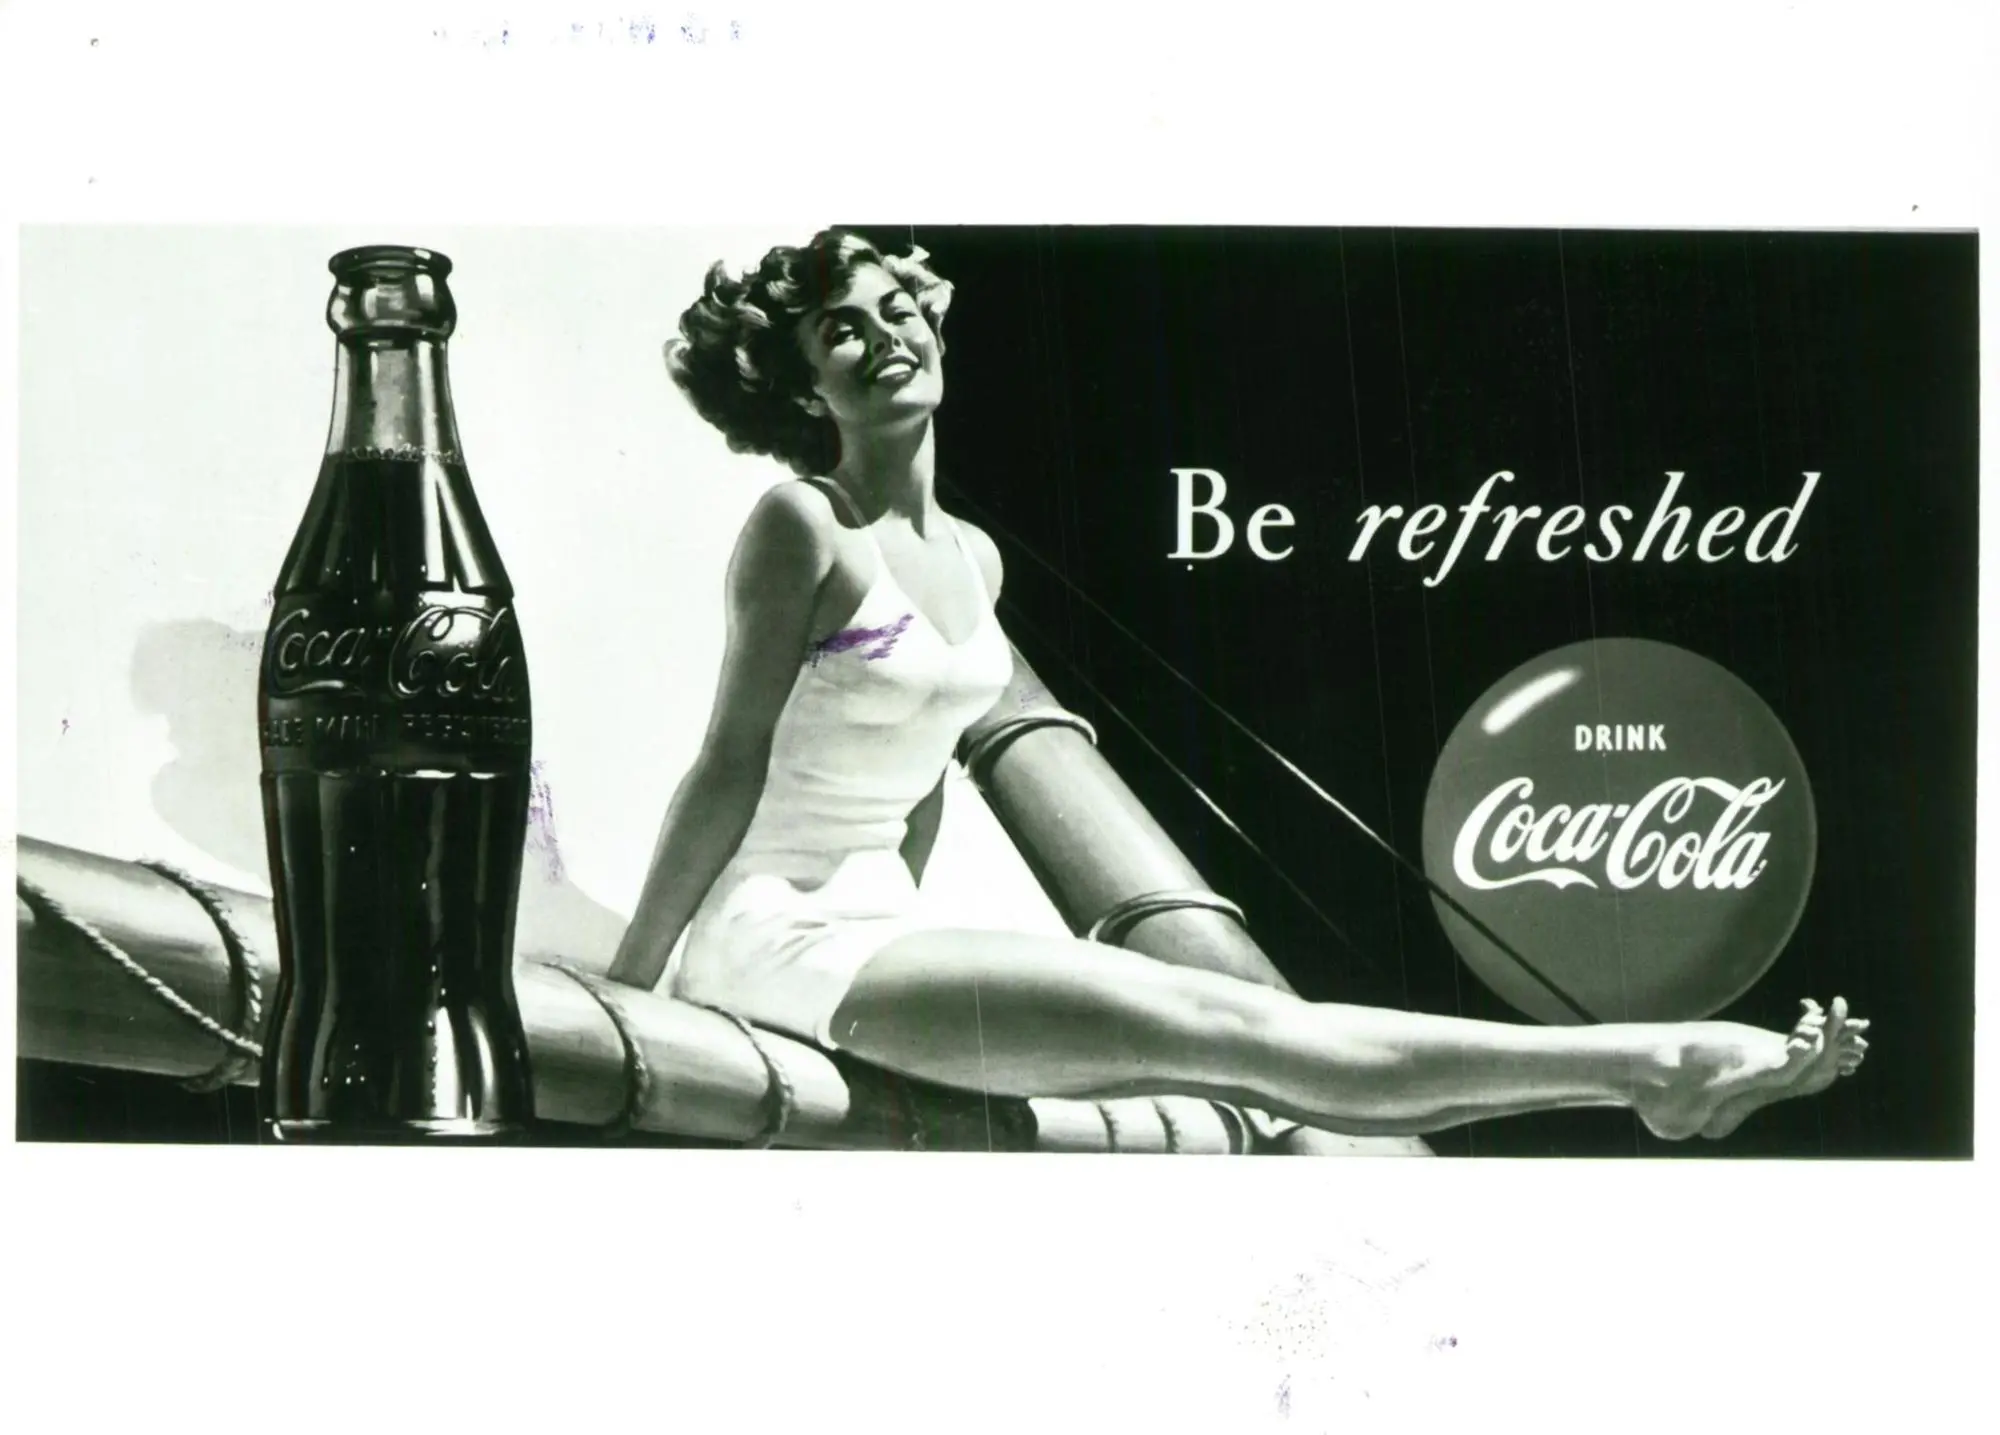 Una vecchia pubblicità Coca Cola